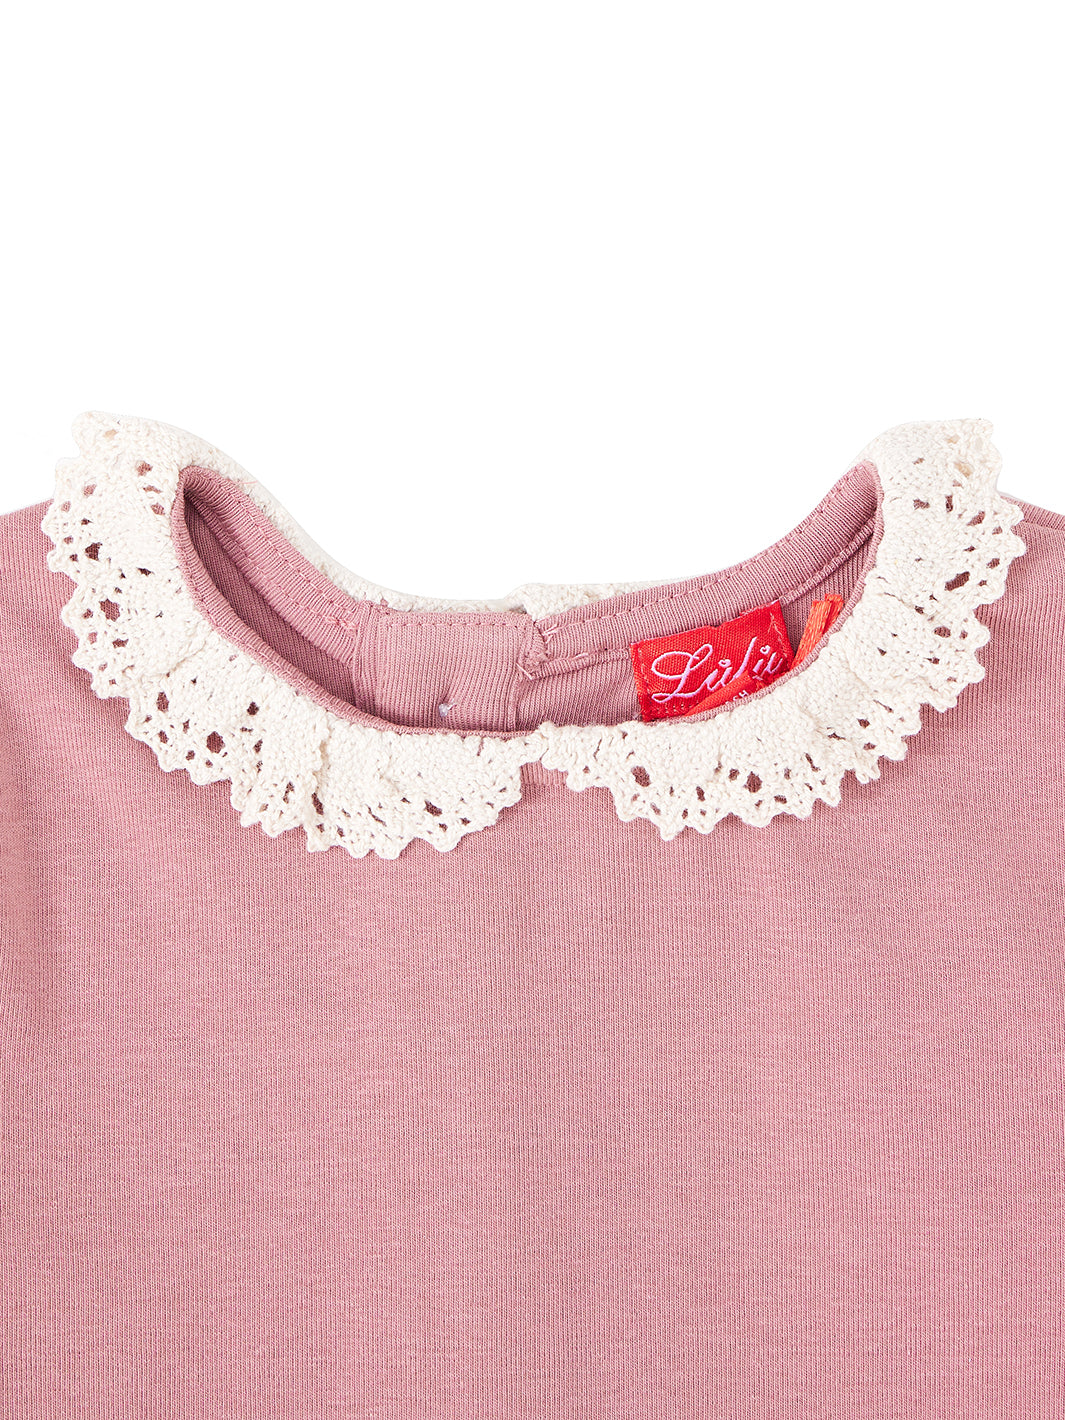 Lace Collar T-shirt - Dk. Mauve